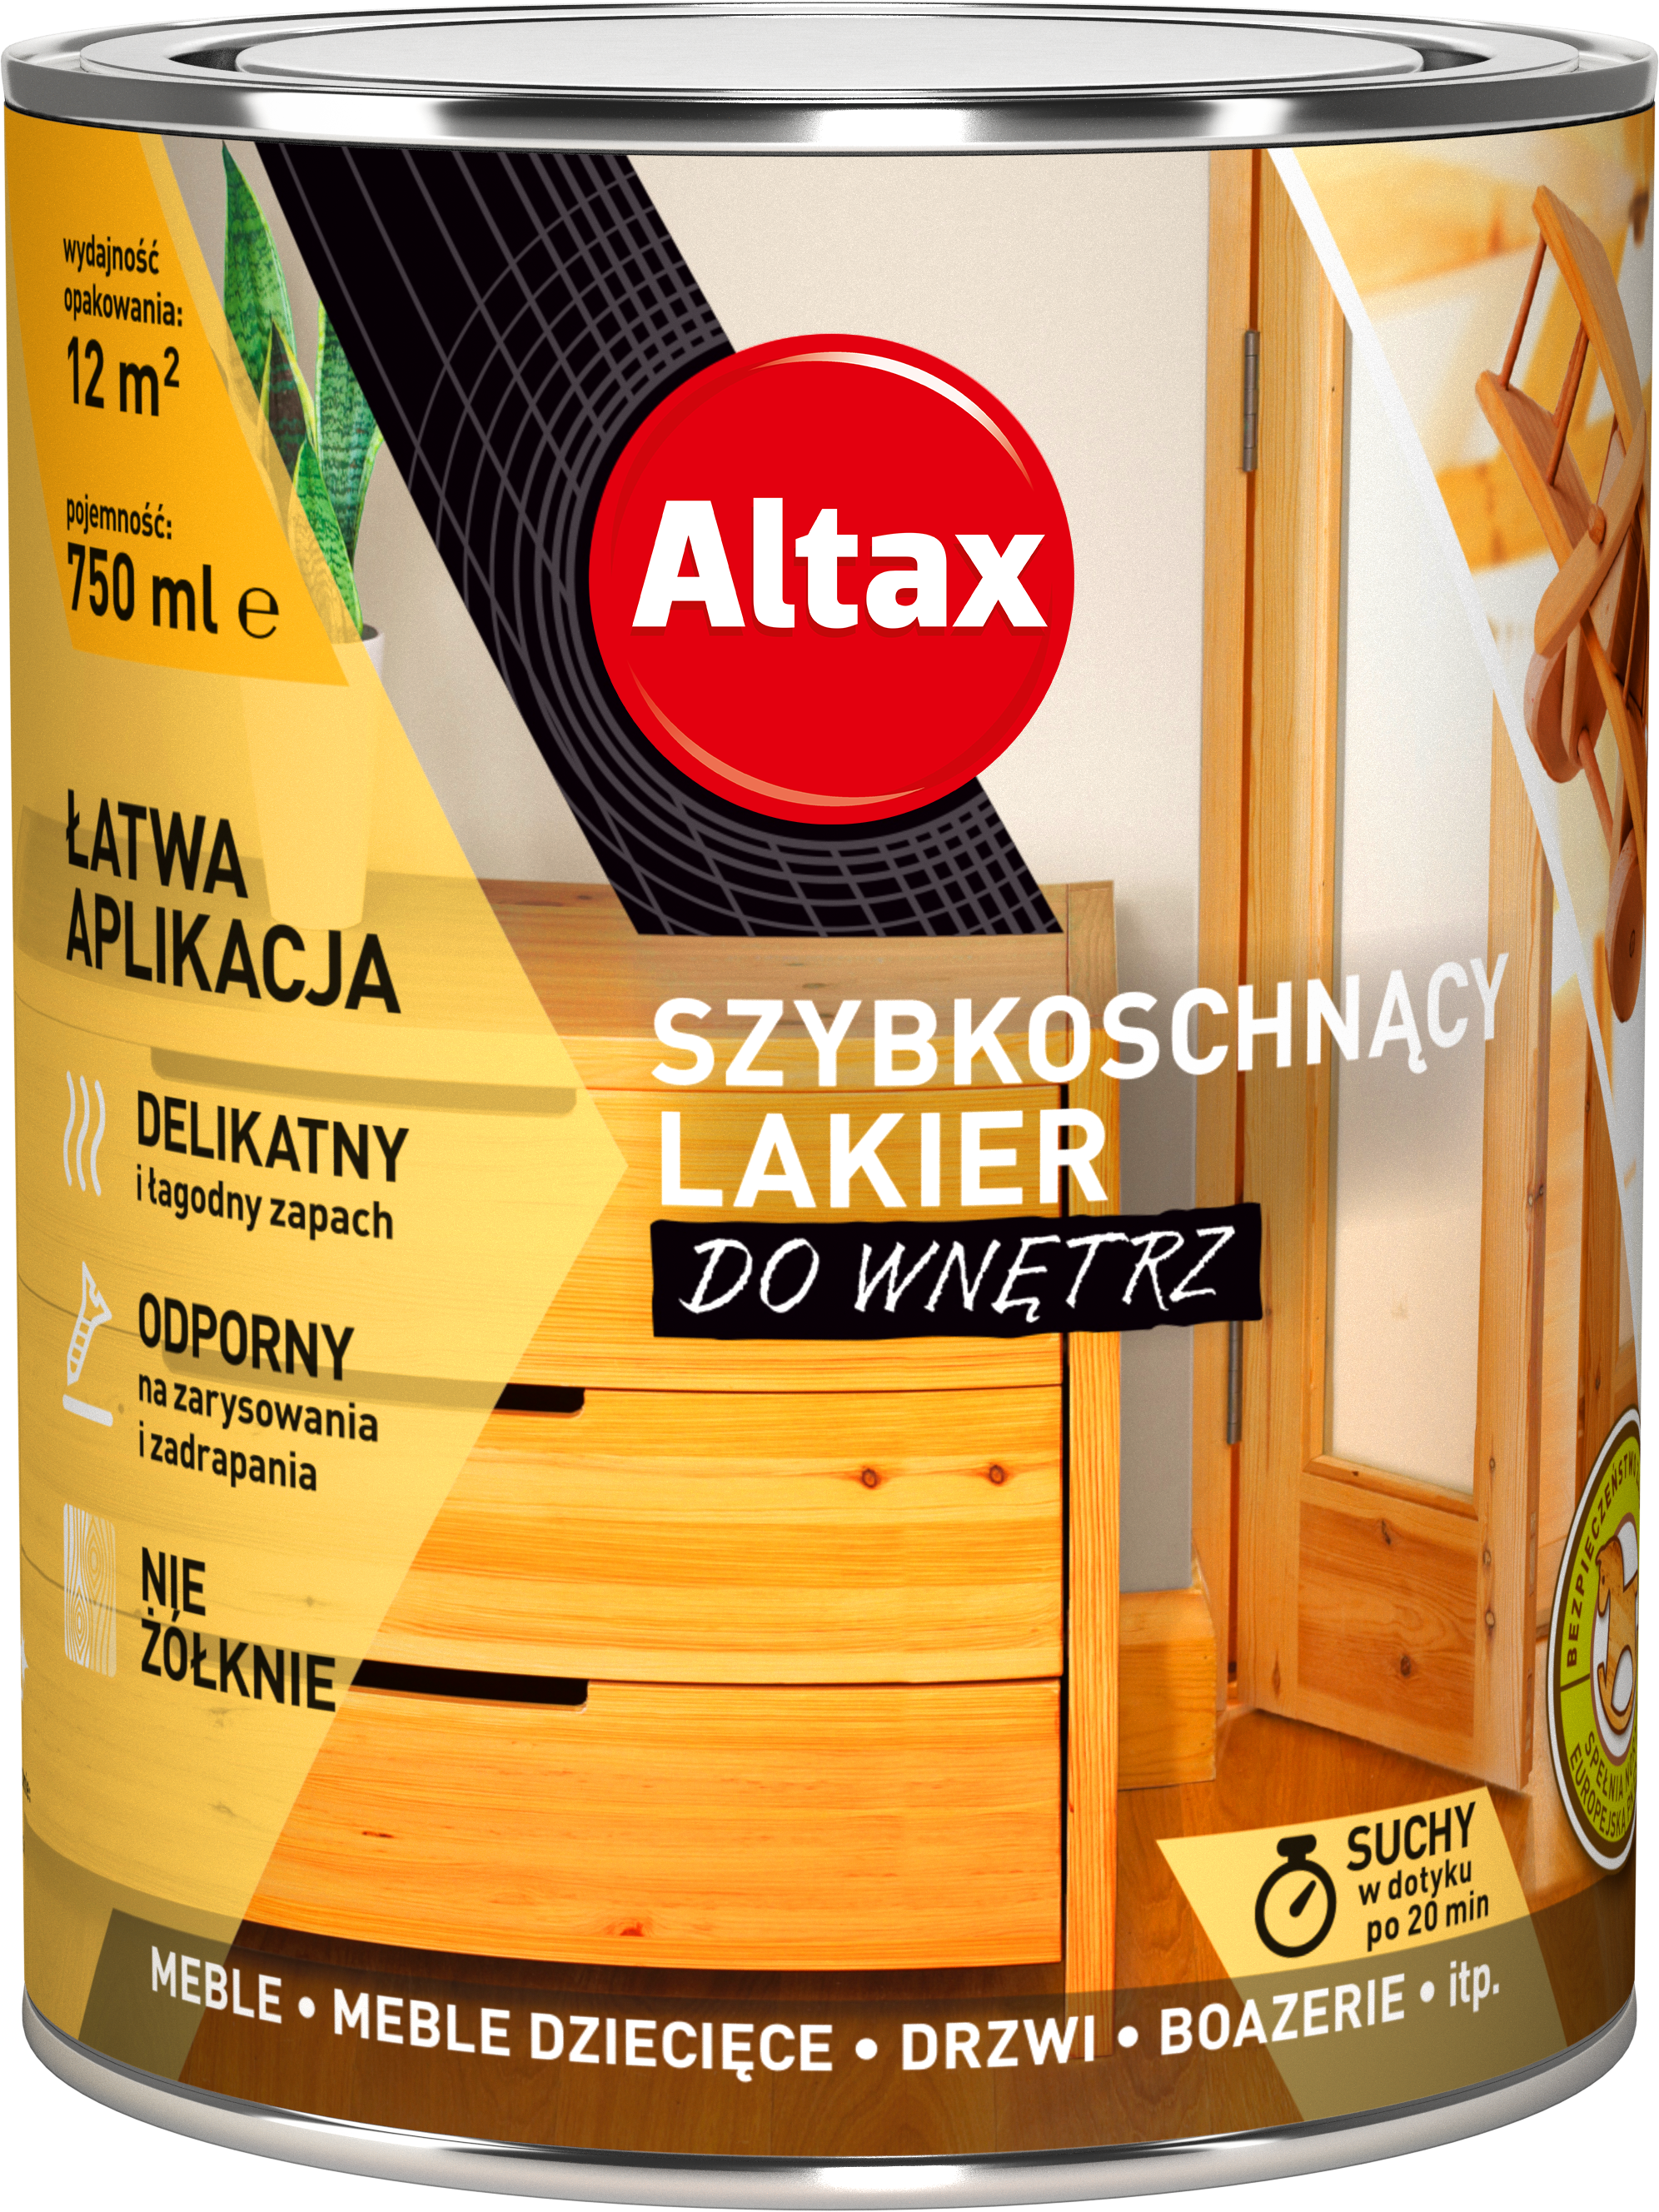 ALTAX-szybkoschnacy-lakier-do-wnetrz-750ml-01